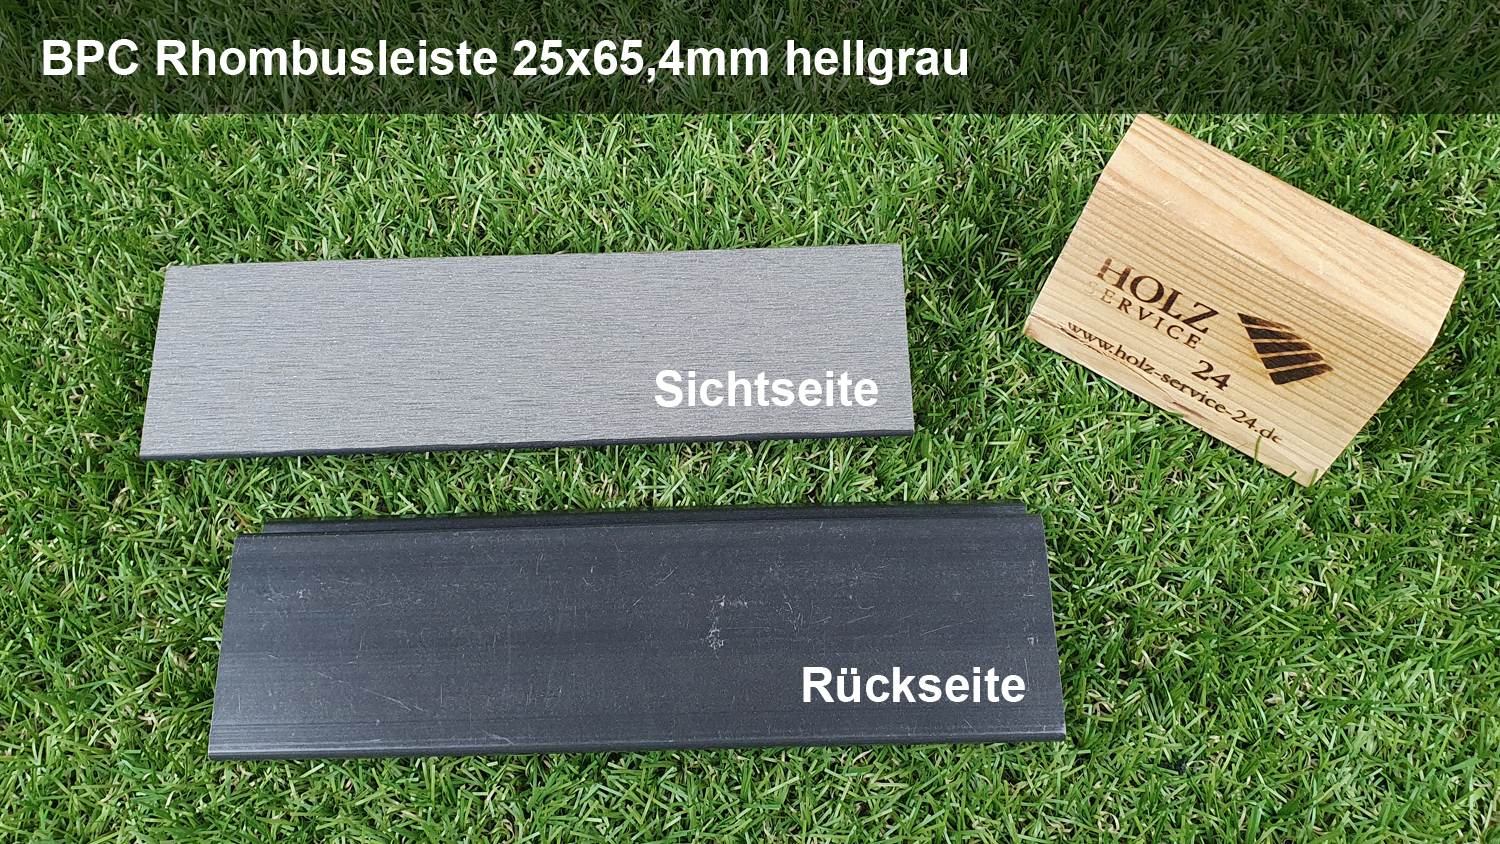 HS24 WPC/BPC Rhombusleiste hellgrau 25x65,4mm, Länge 5,00m, geschliffen, Hohlkammer